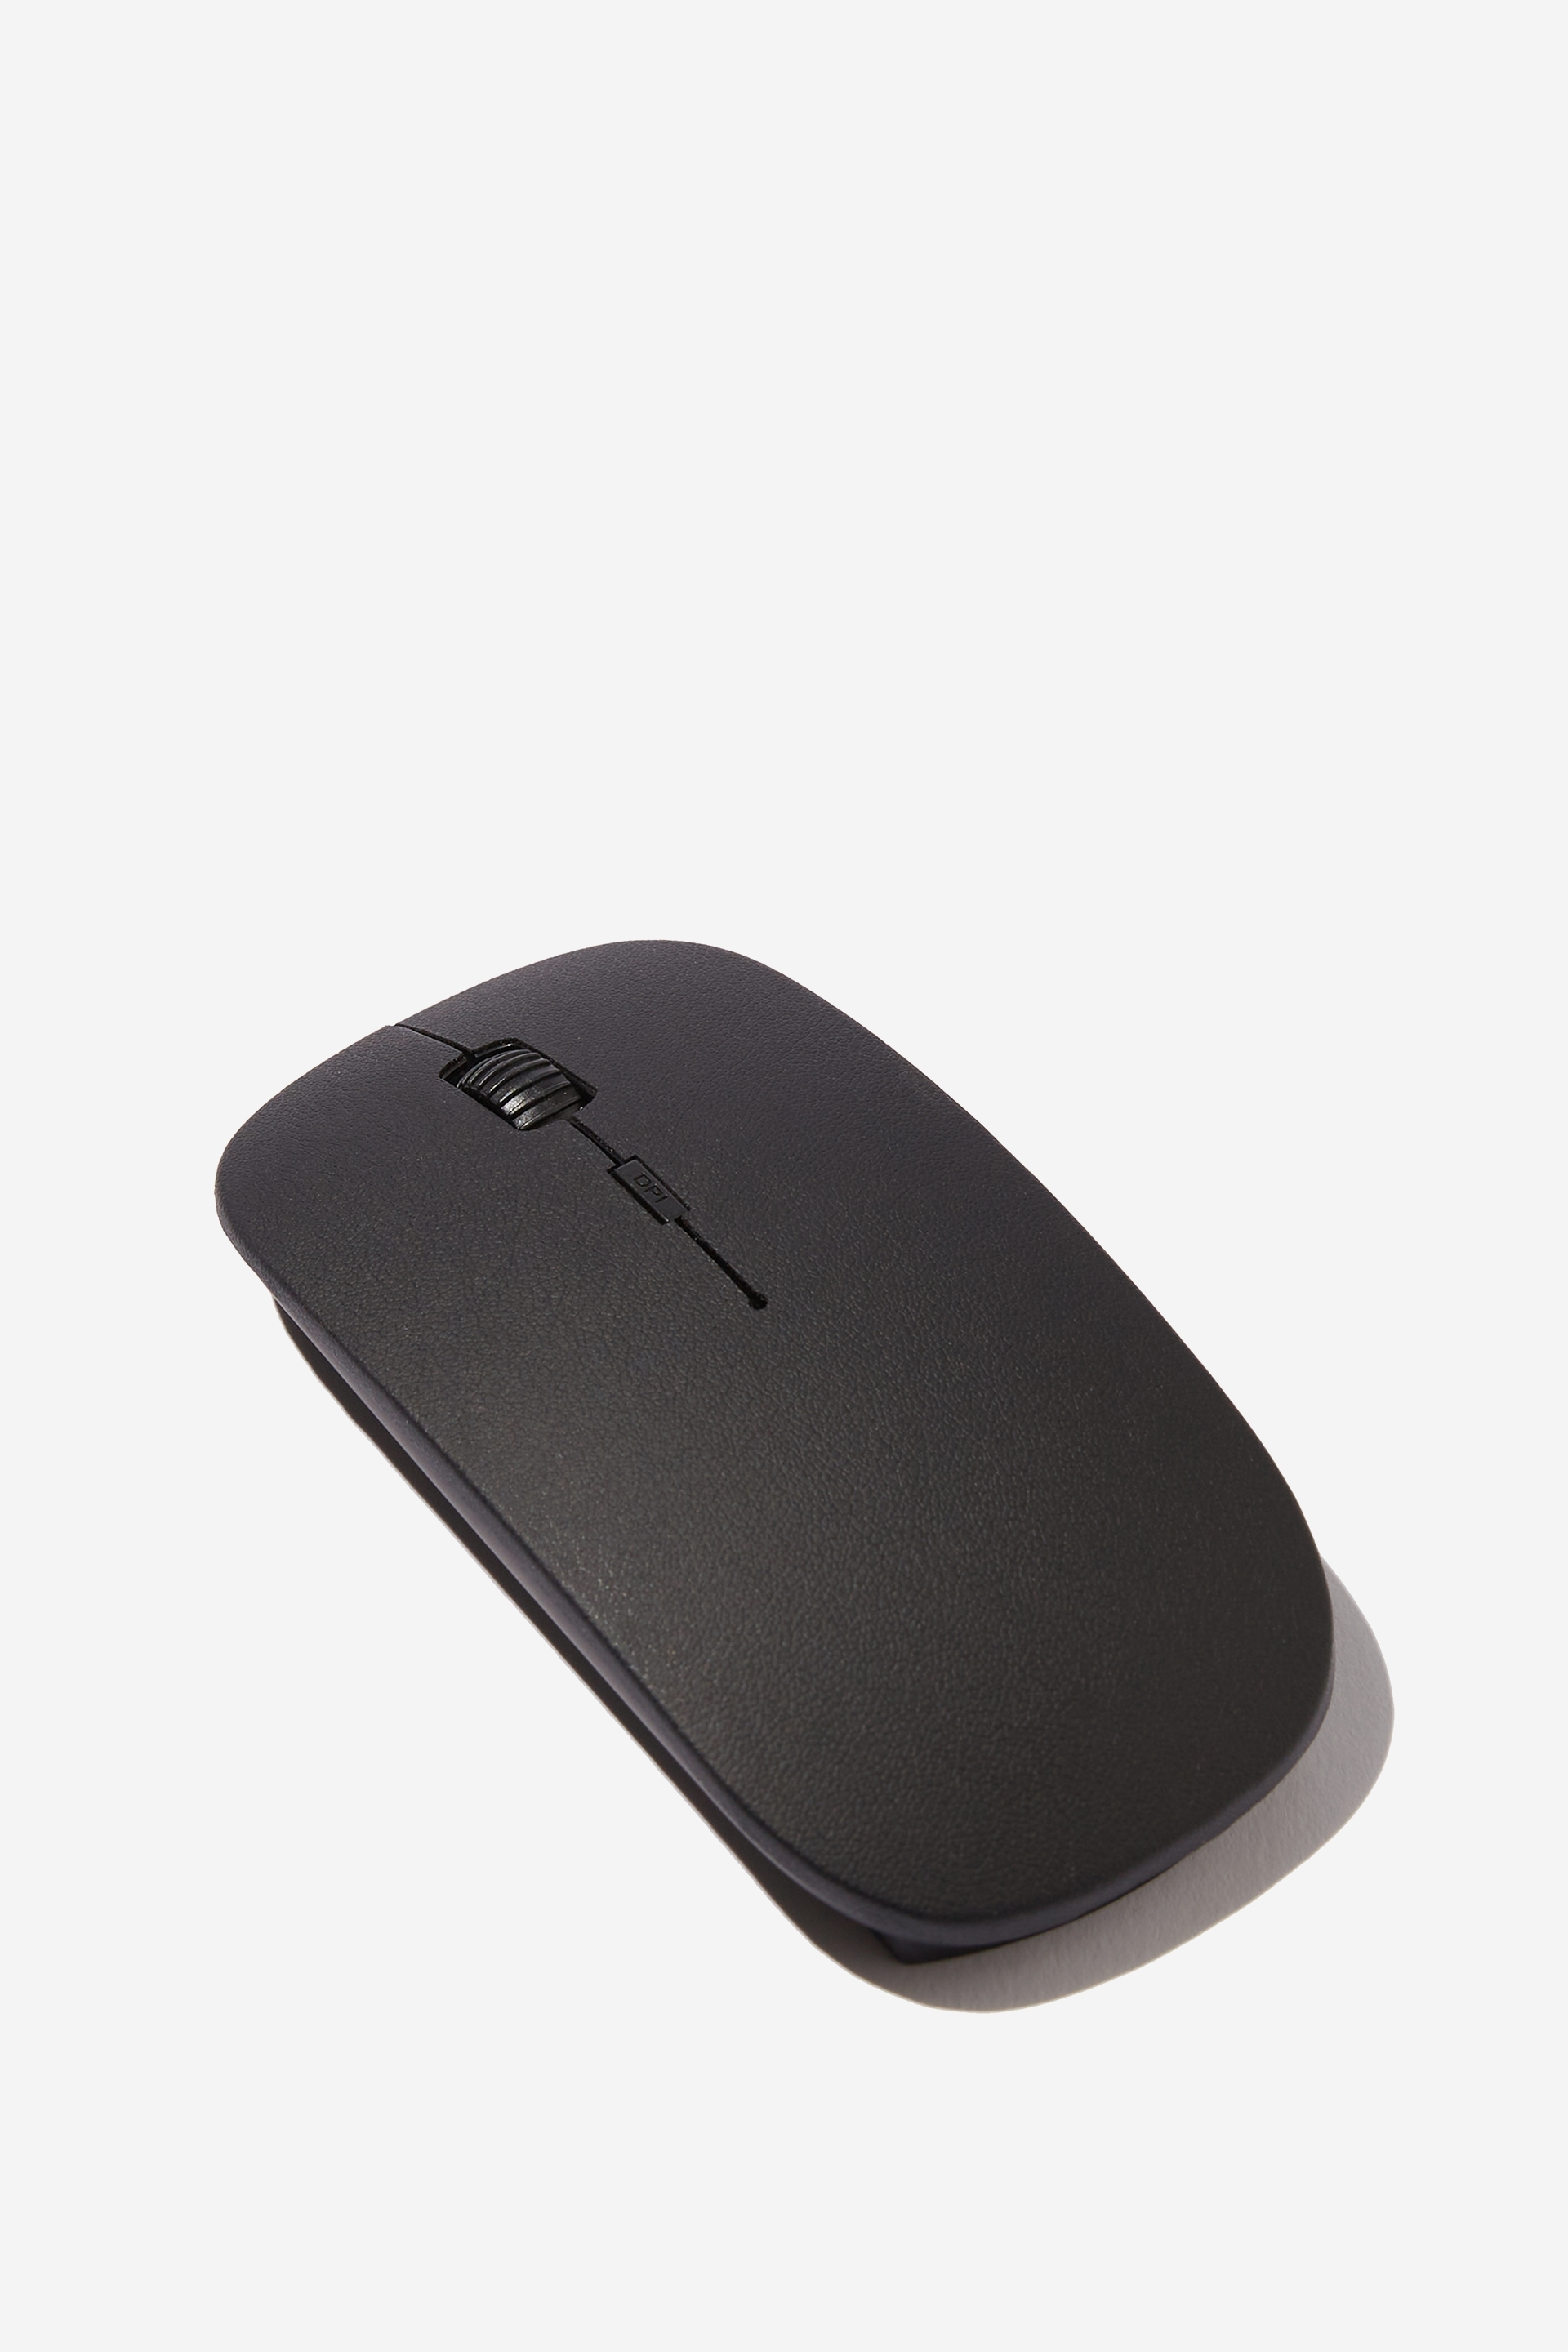 Typo - Wireless Mouse - Black